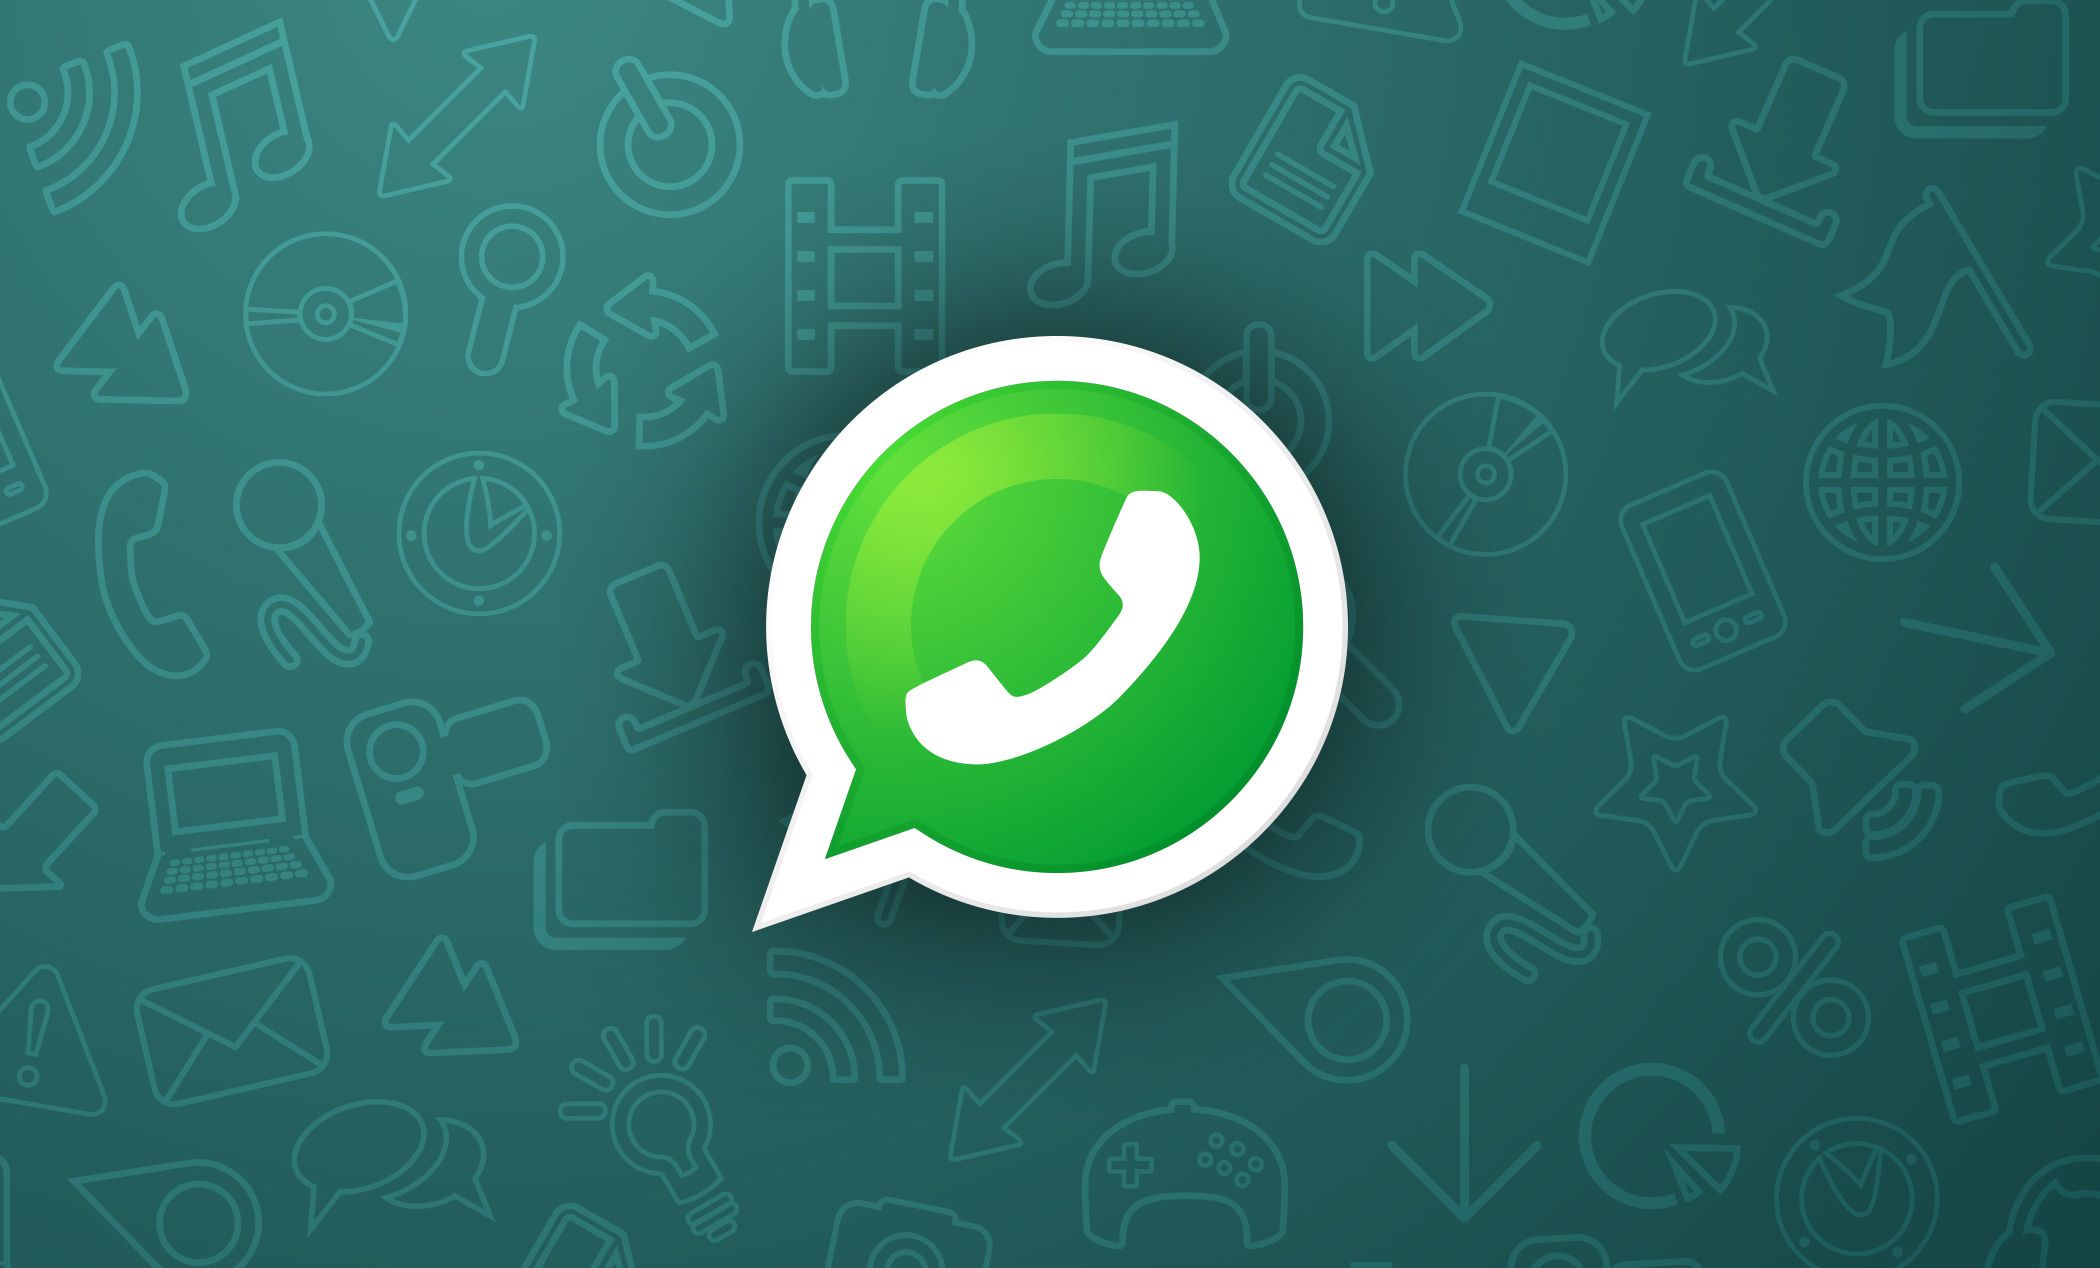 La red social WhatsApp trabaja en una nueva función para que los usuarios descubran negocios cercanos a su ubicación y puedan realizar sus compras